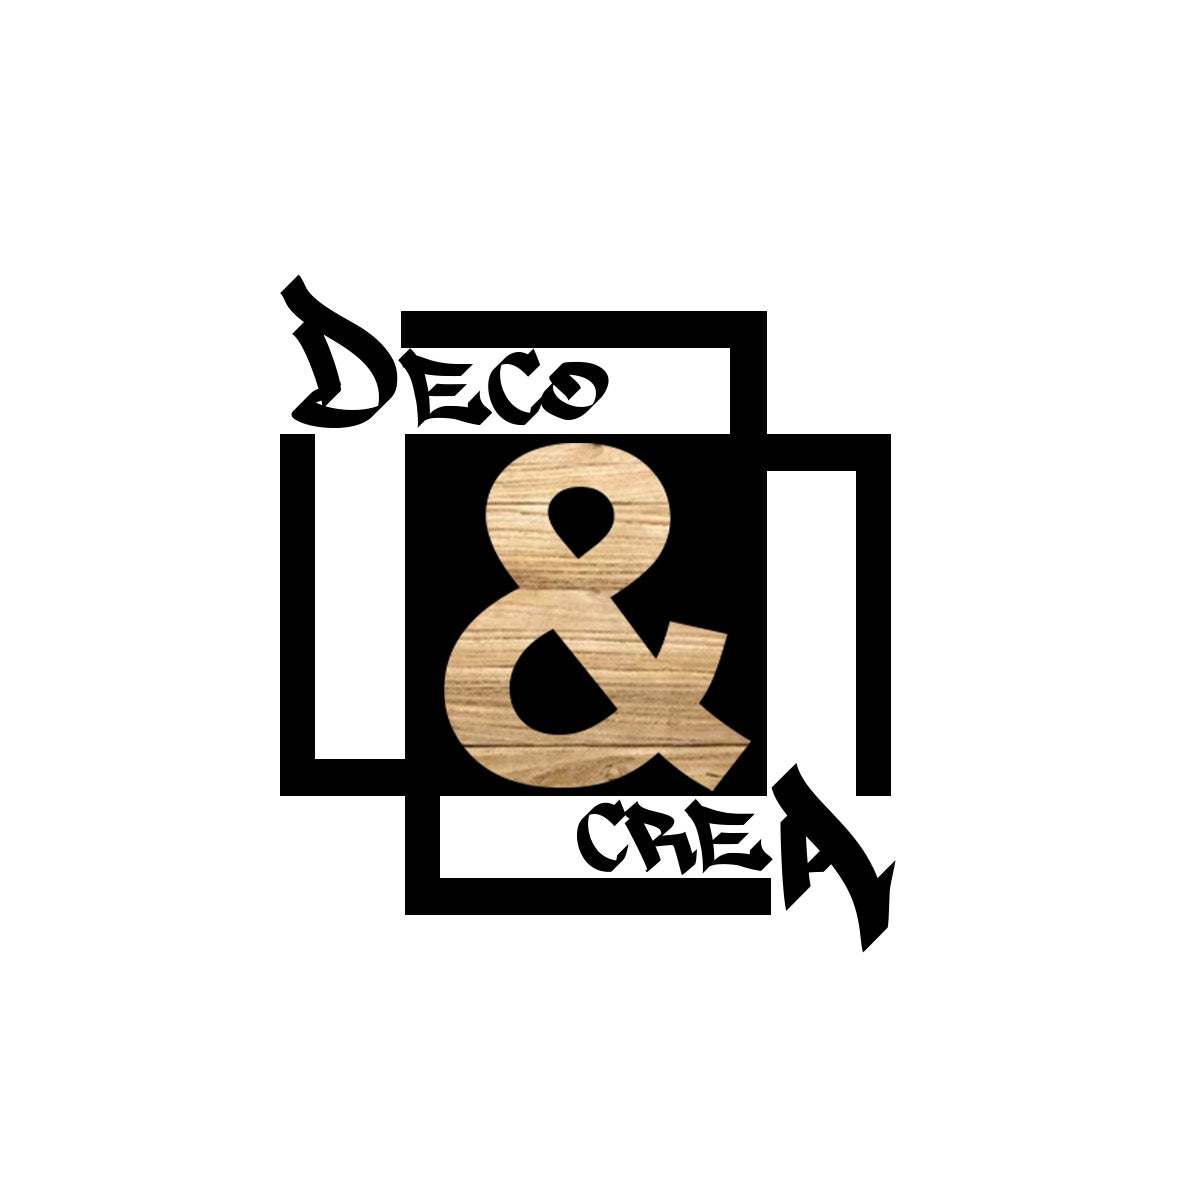 DECO & CREA